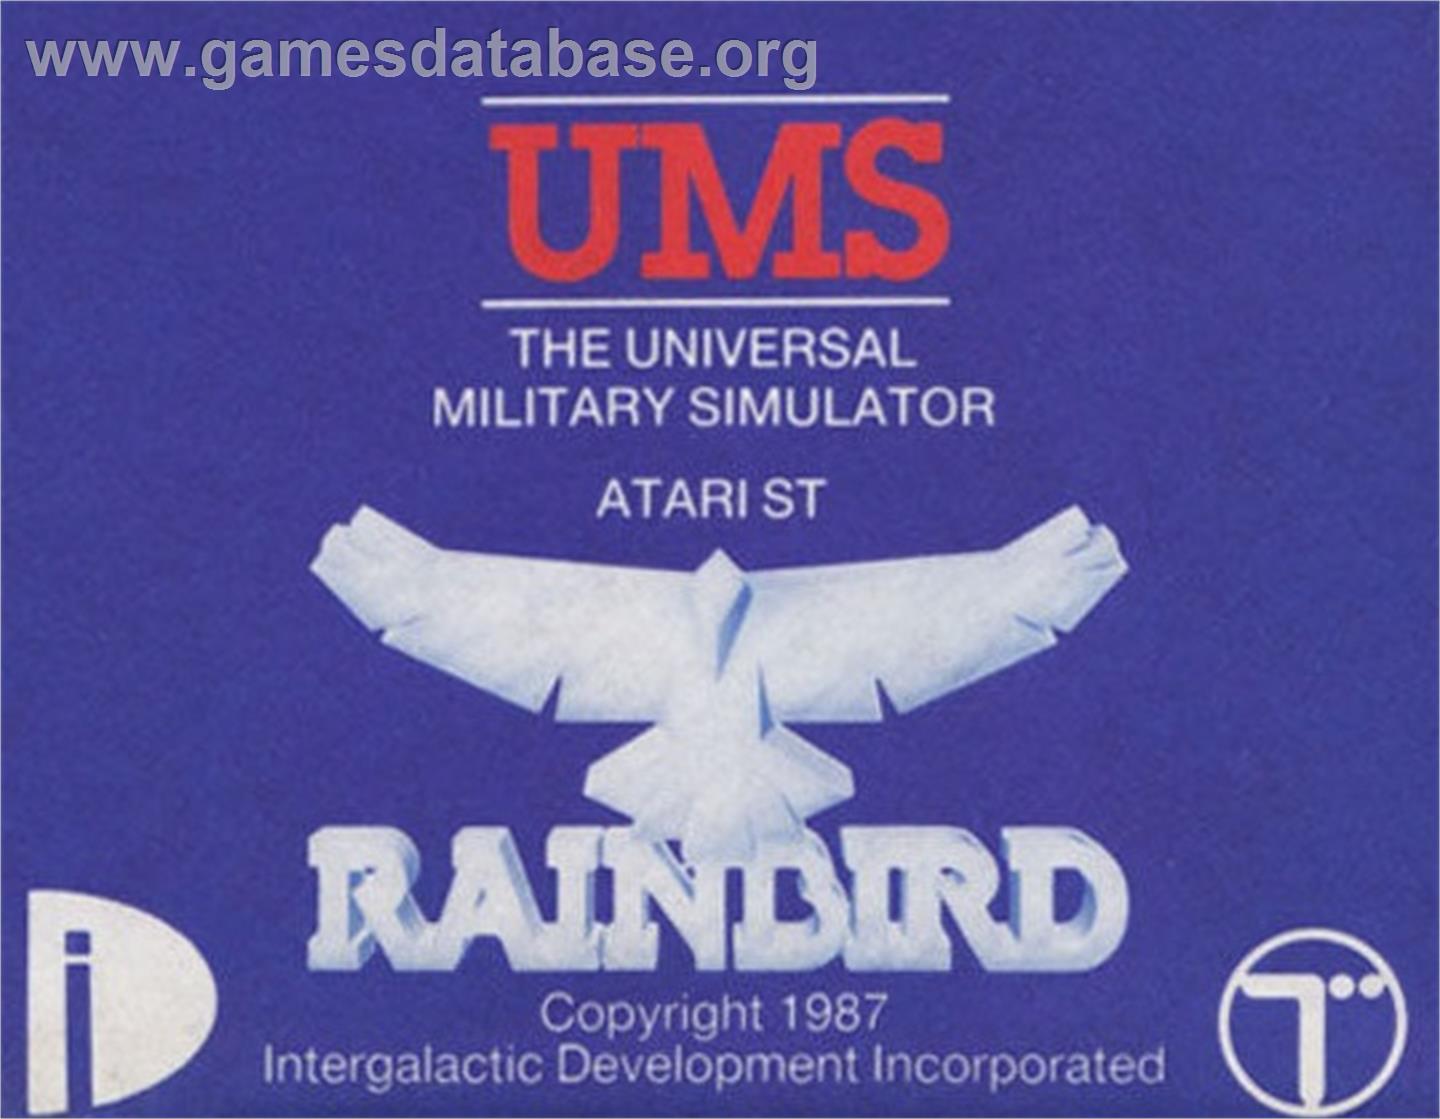 UMS: The Universal Military Simulator - Atari ST - Artwork - Cartridge Top